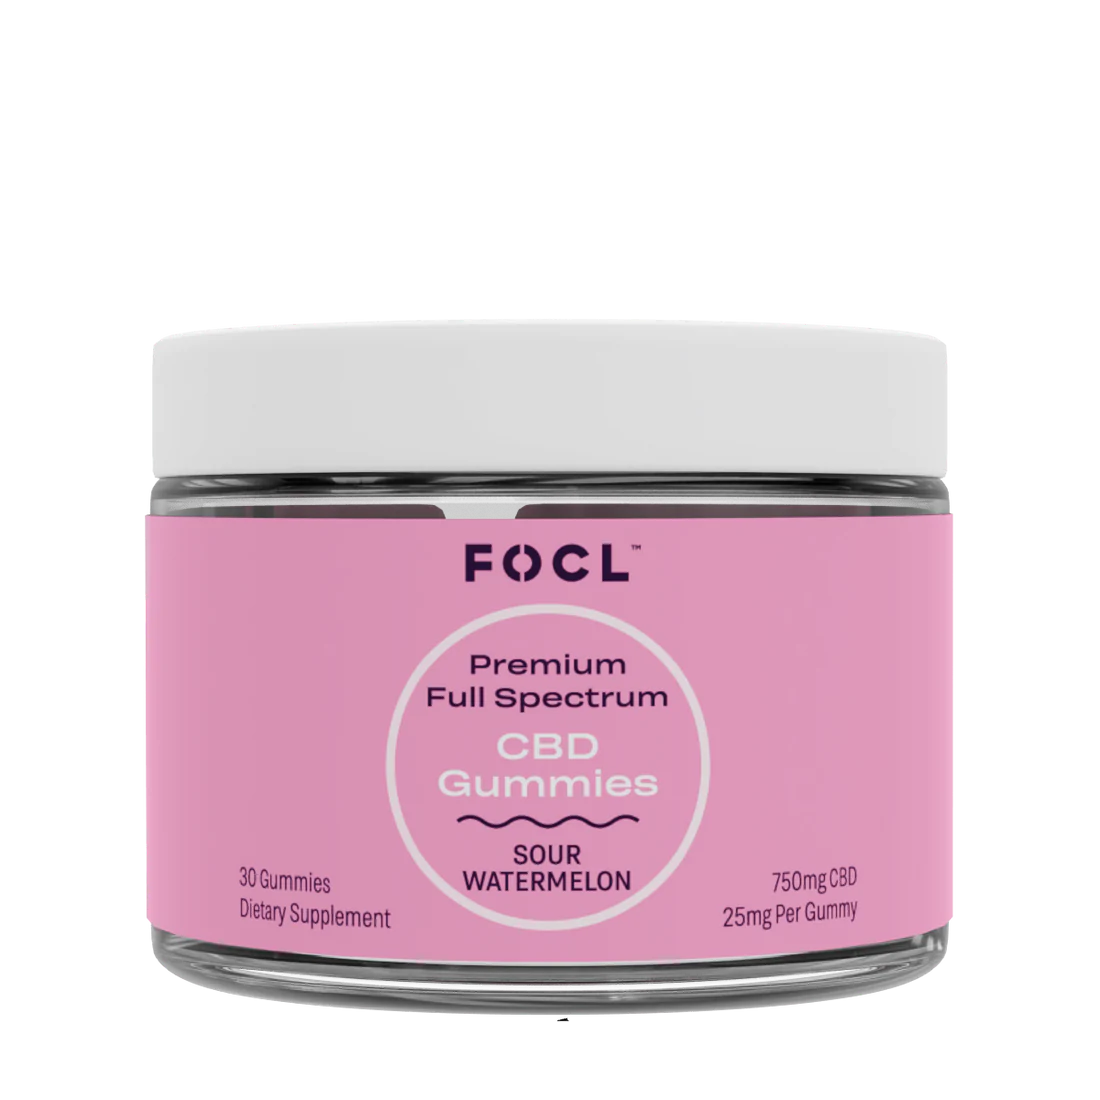 FOCL – Premium Full Spectrum CBD Gummies (Available in 3 Flavors)